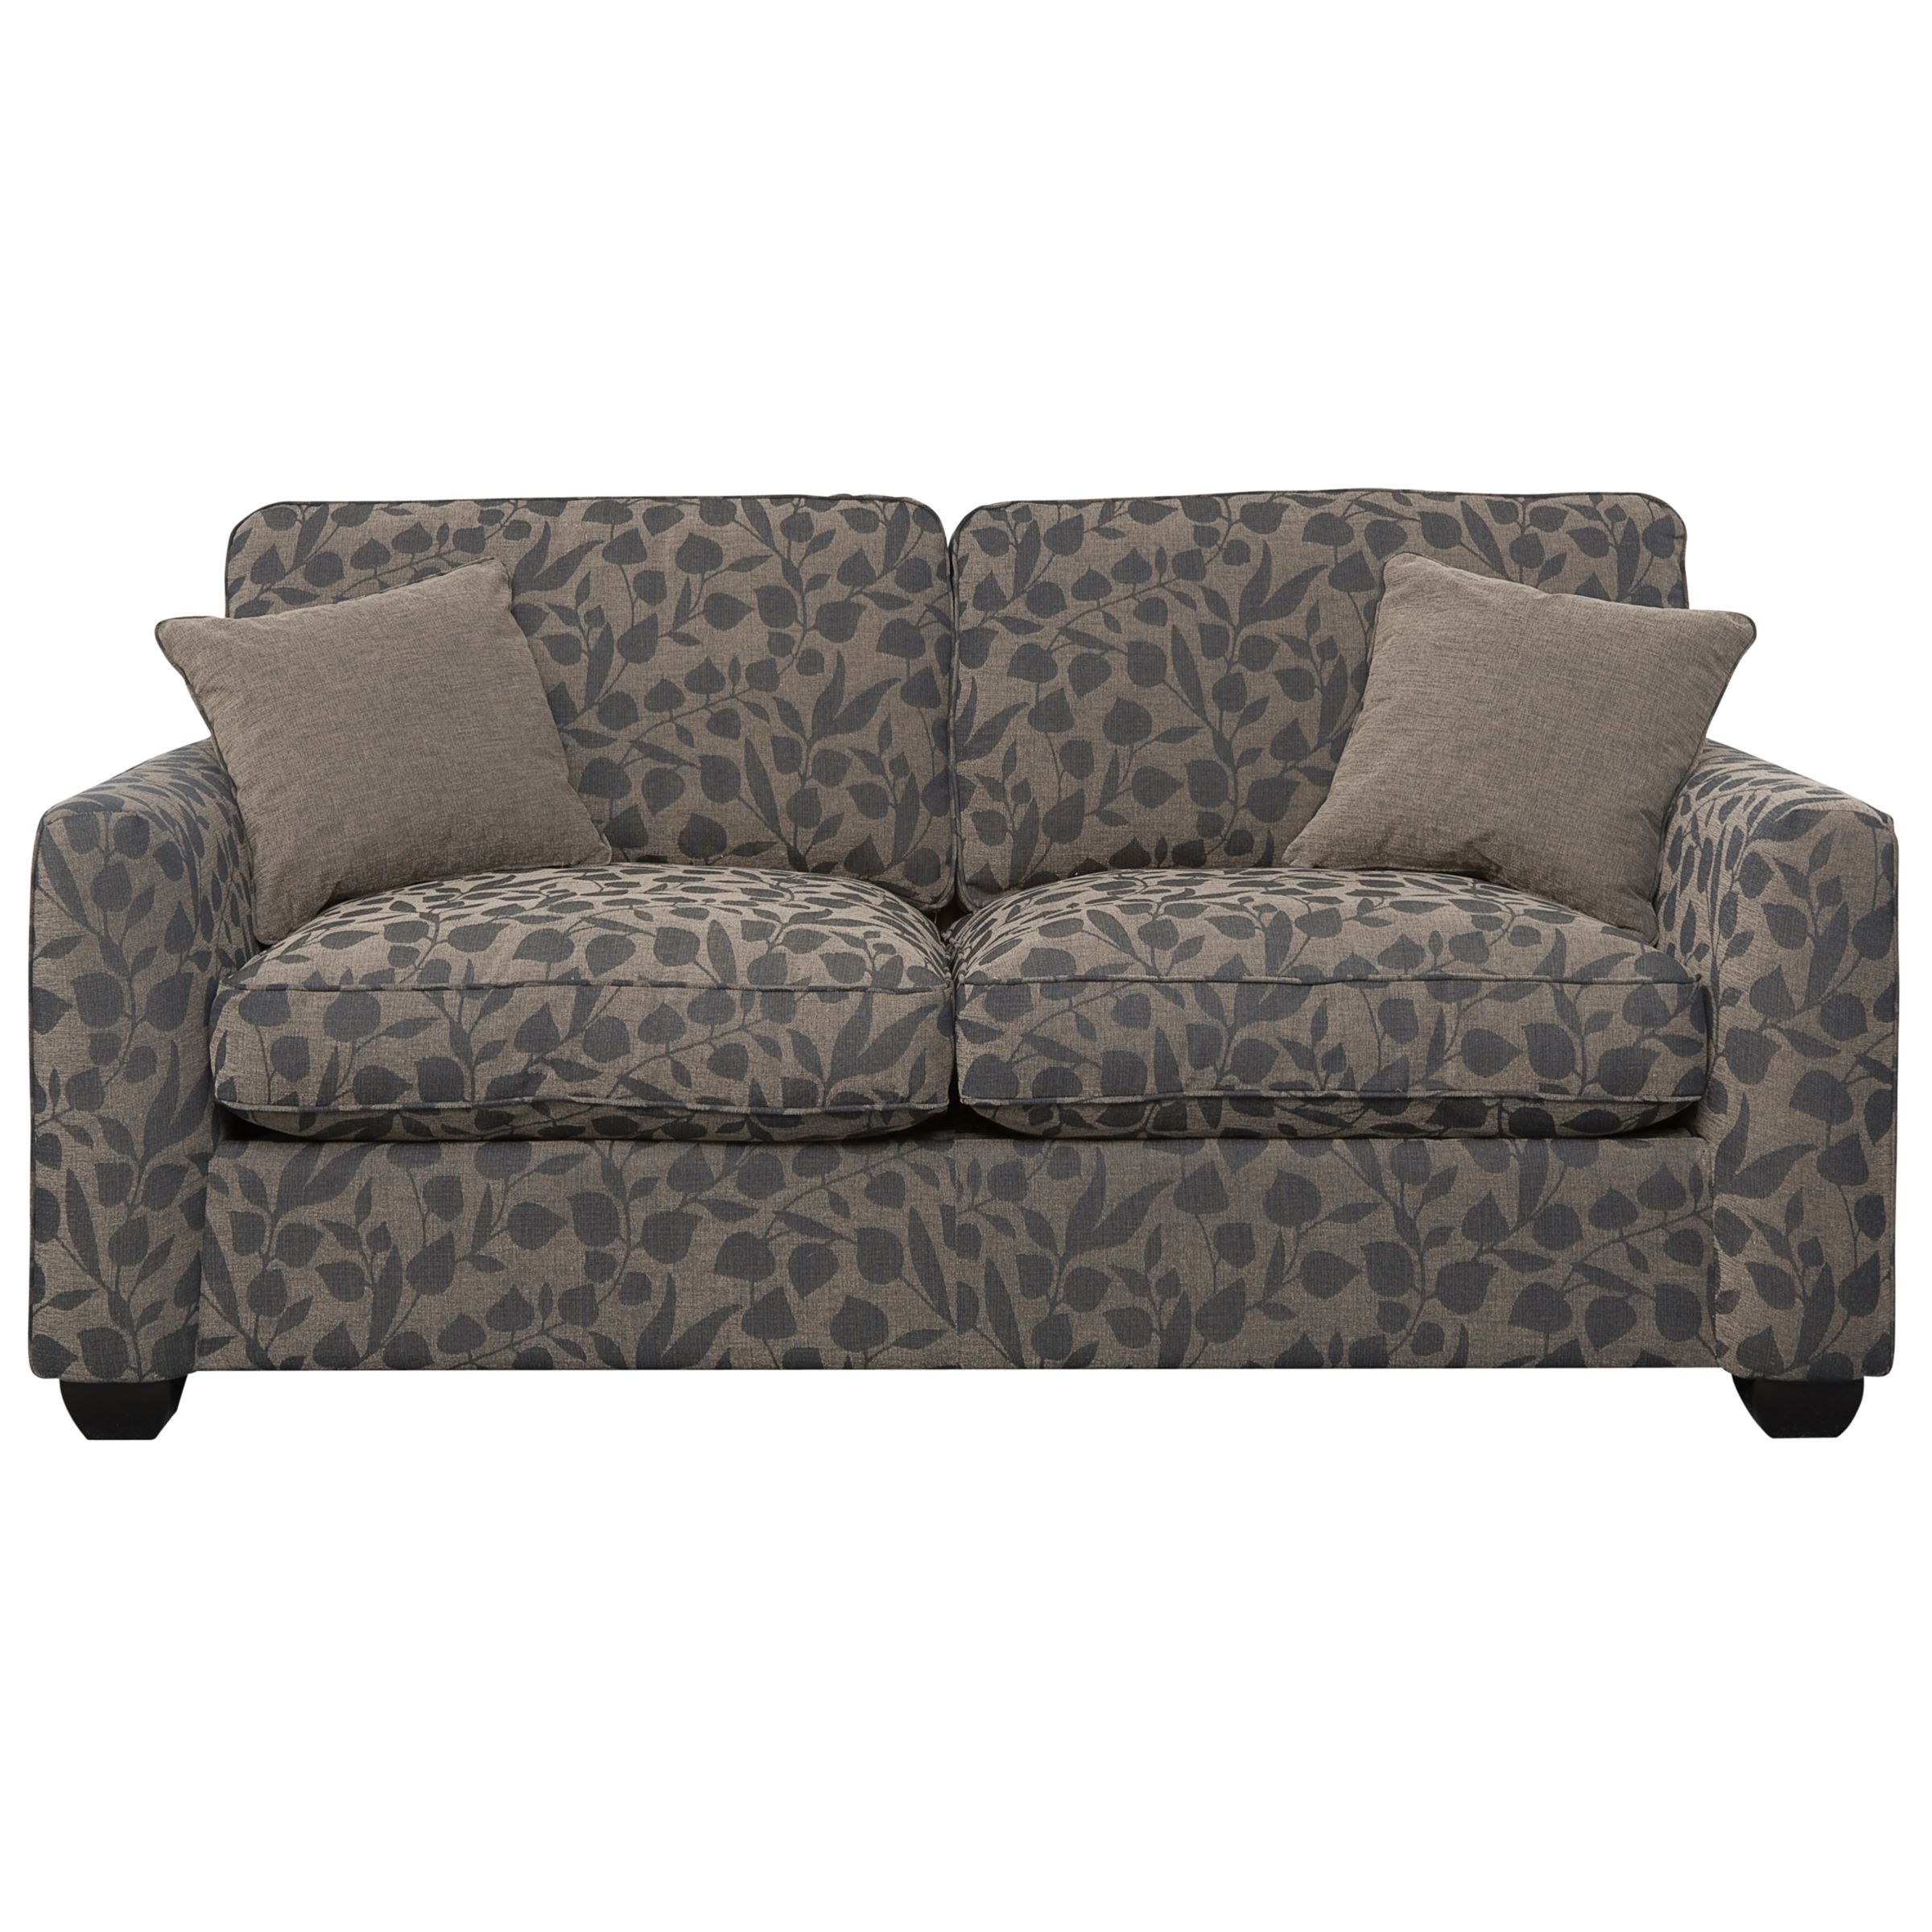 Walton Medium Sofa Bed, Mole Leaf